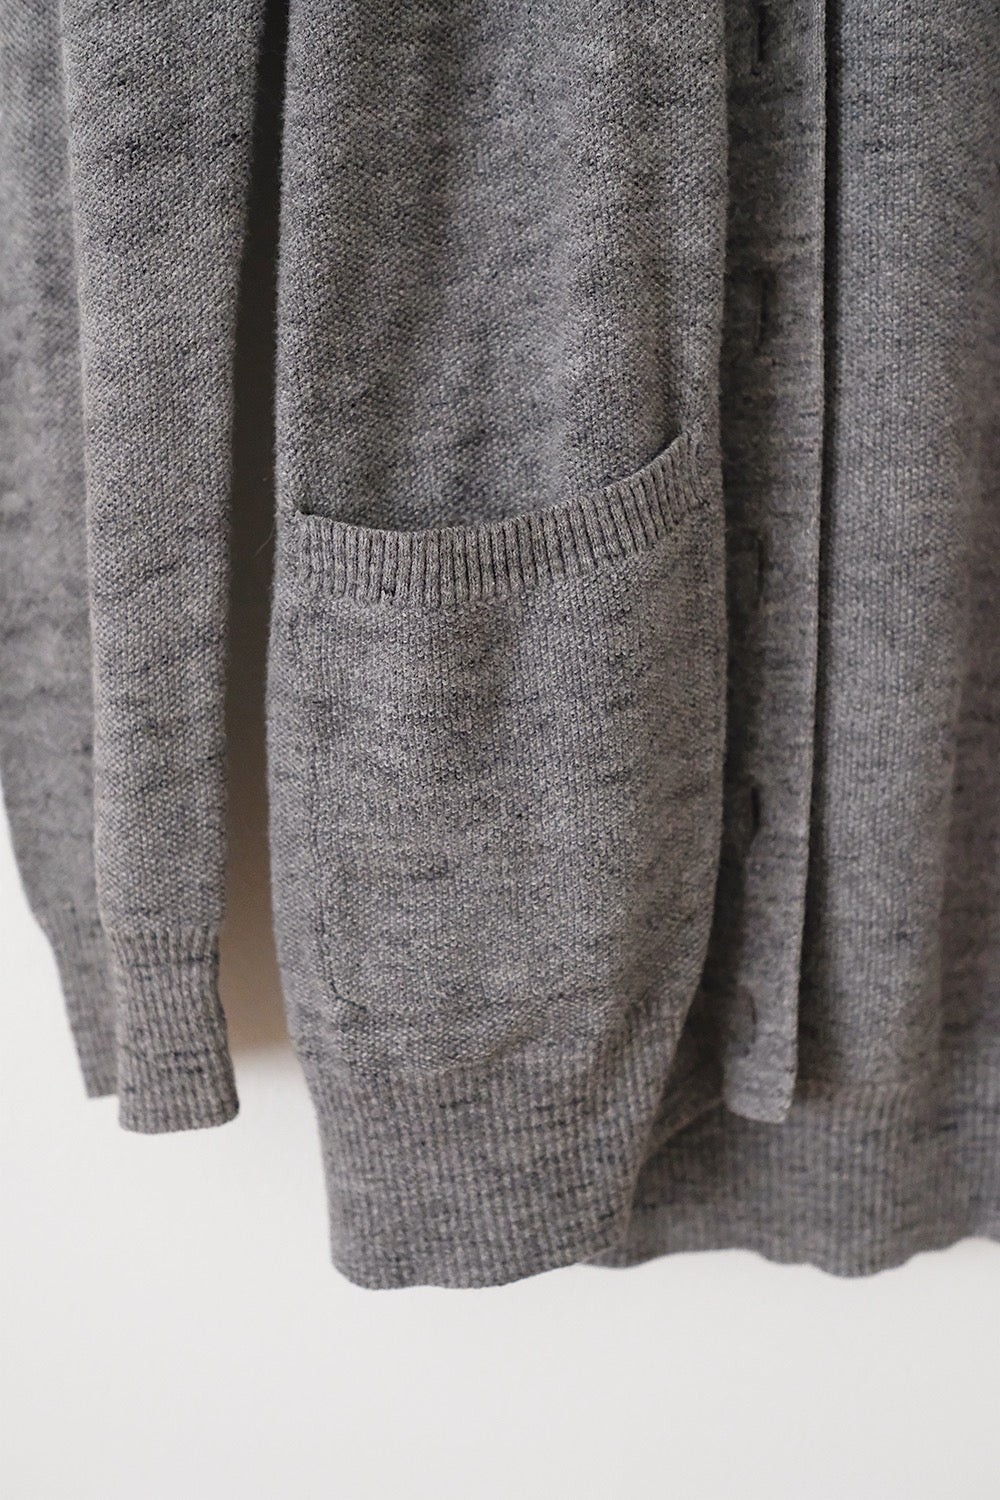 madewell grey knit cardigan